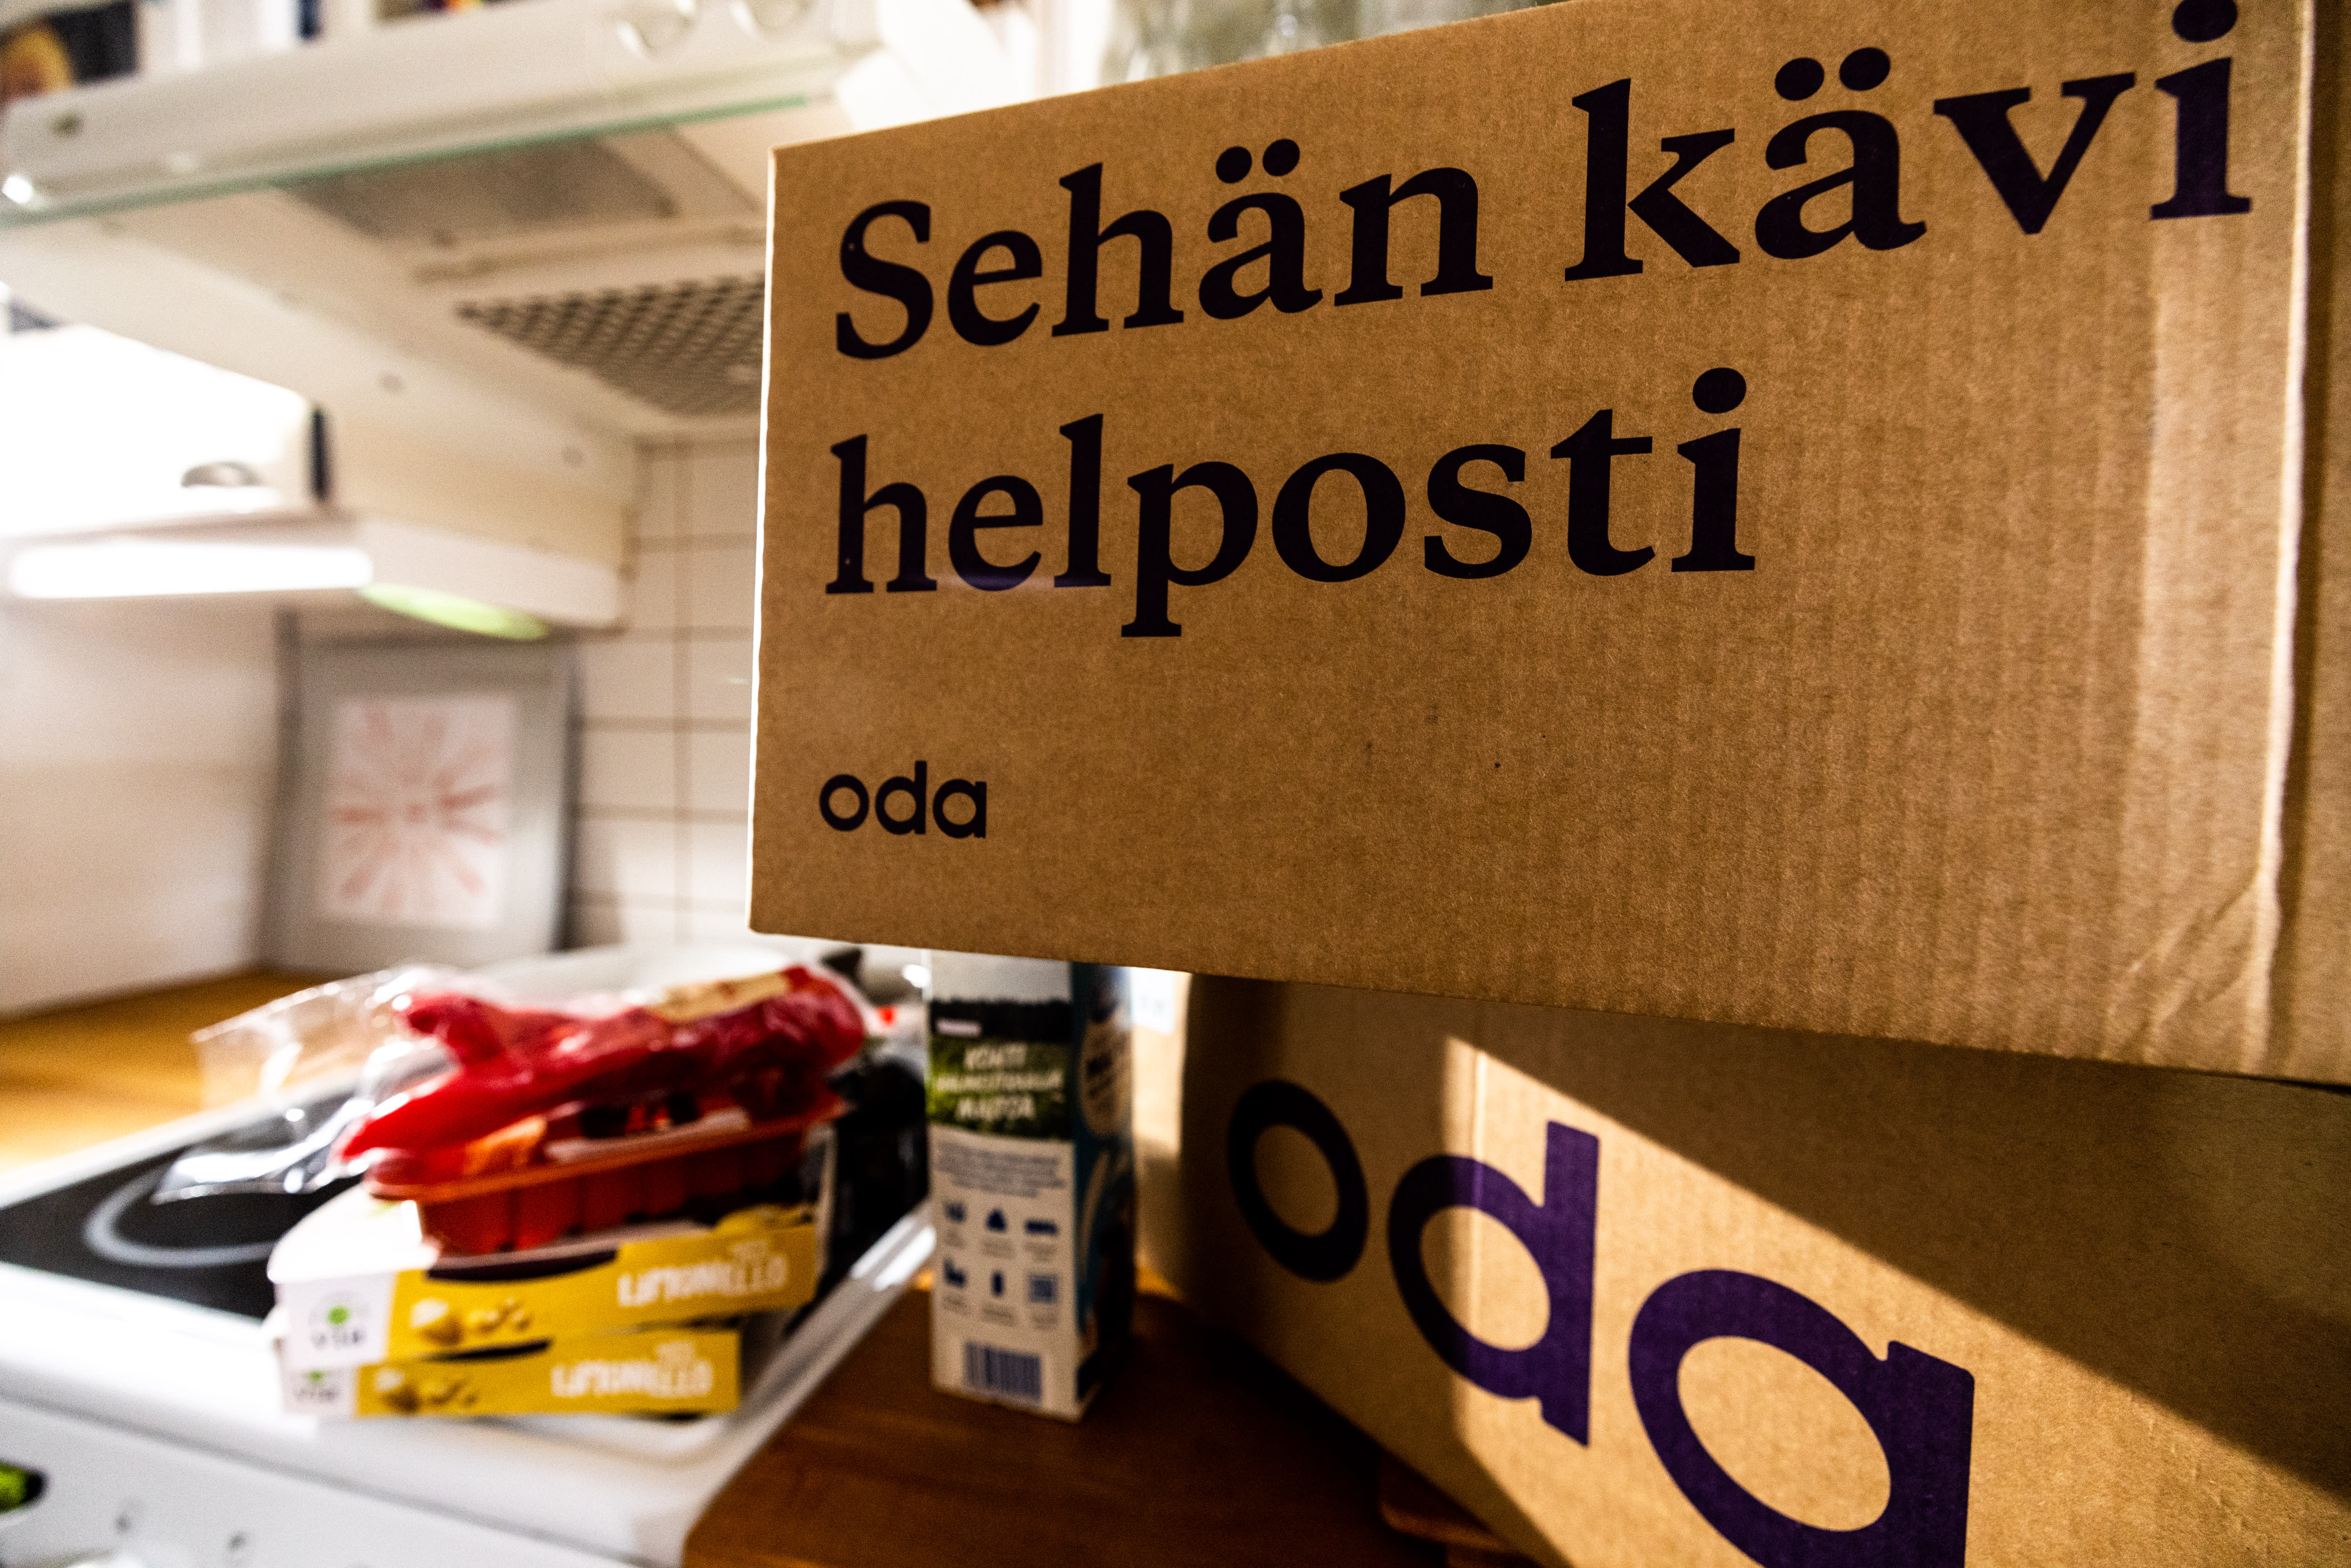 온라인 쇼핑몰 오다(Oda), 핀란드에서 XNUMX년 만에 영업 중단